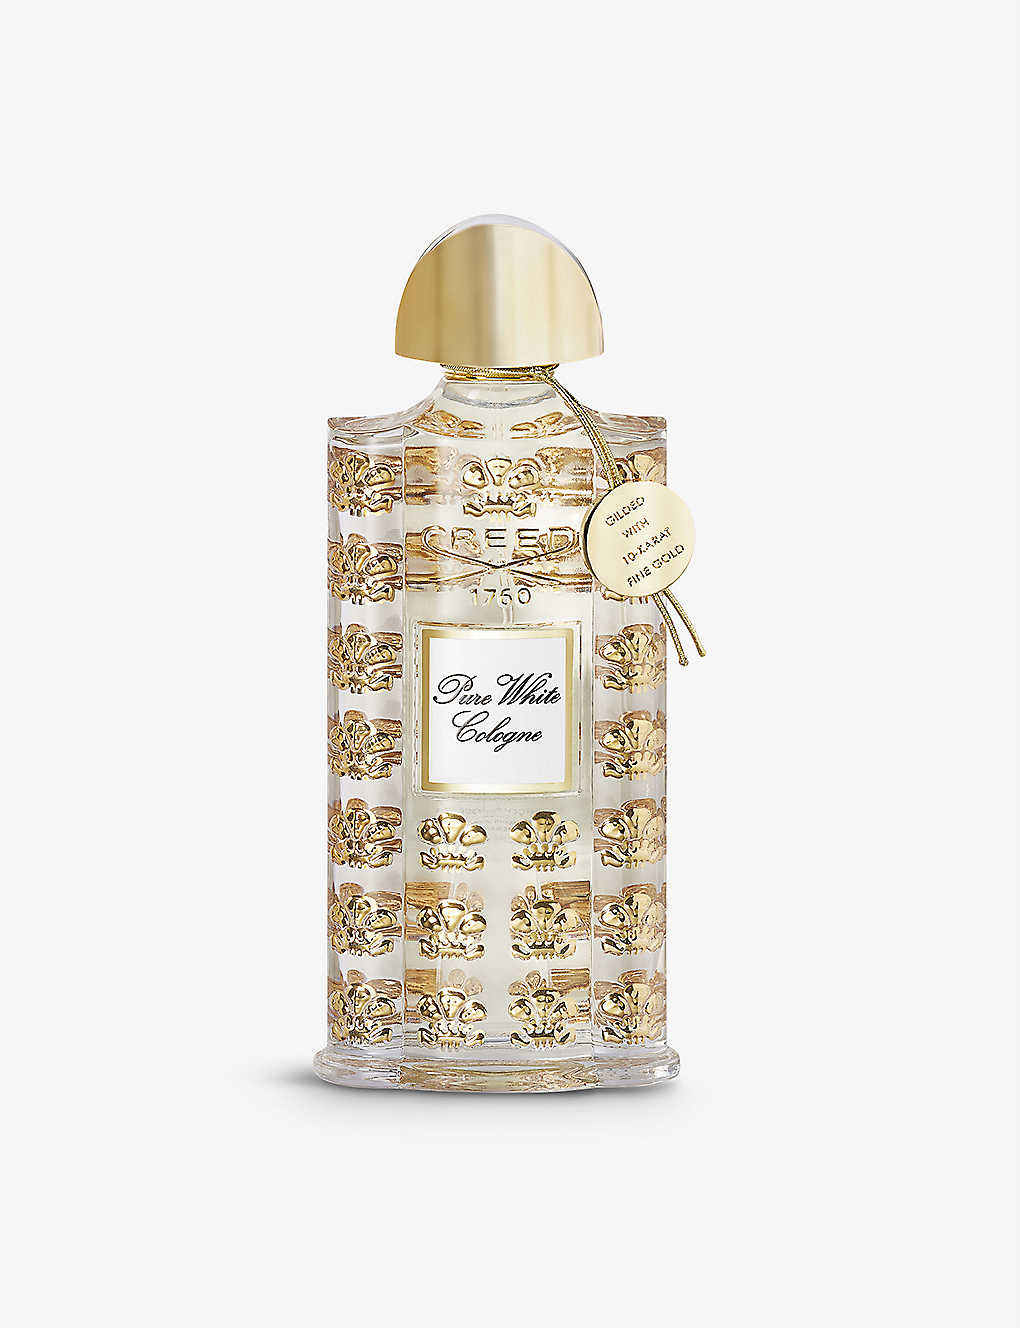 Creed Royale Exclusives Pure White Cologne Eau De Parfum